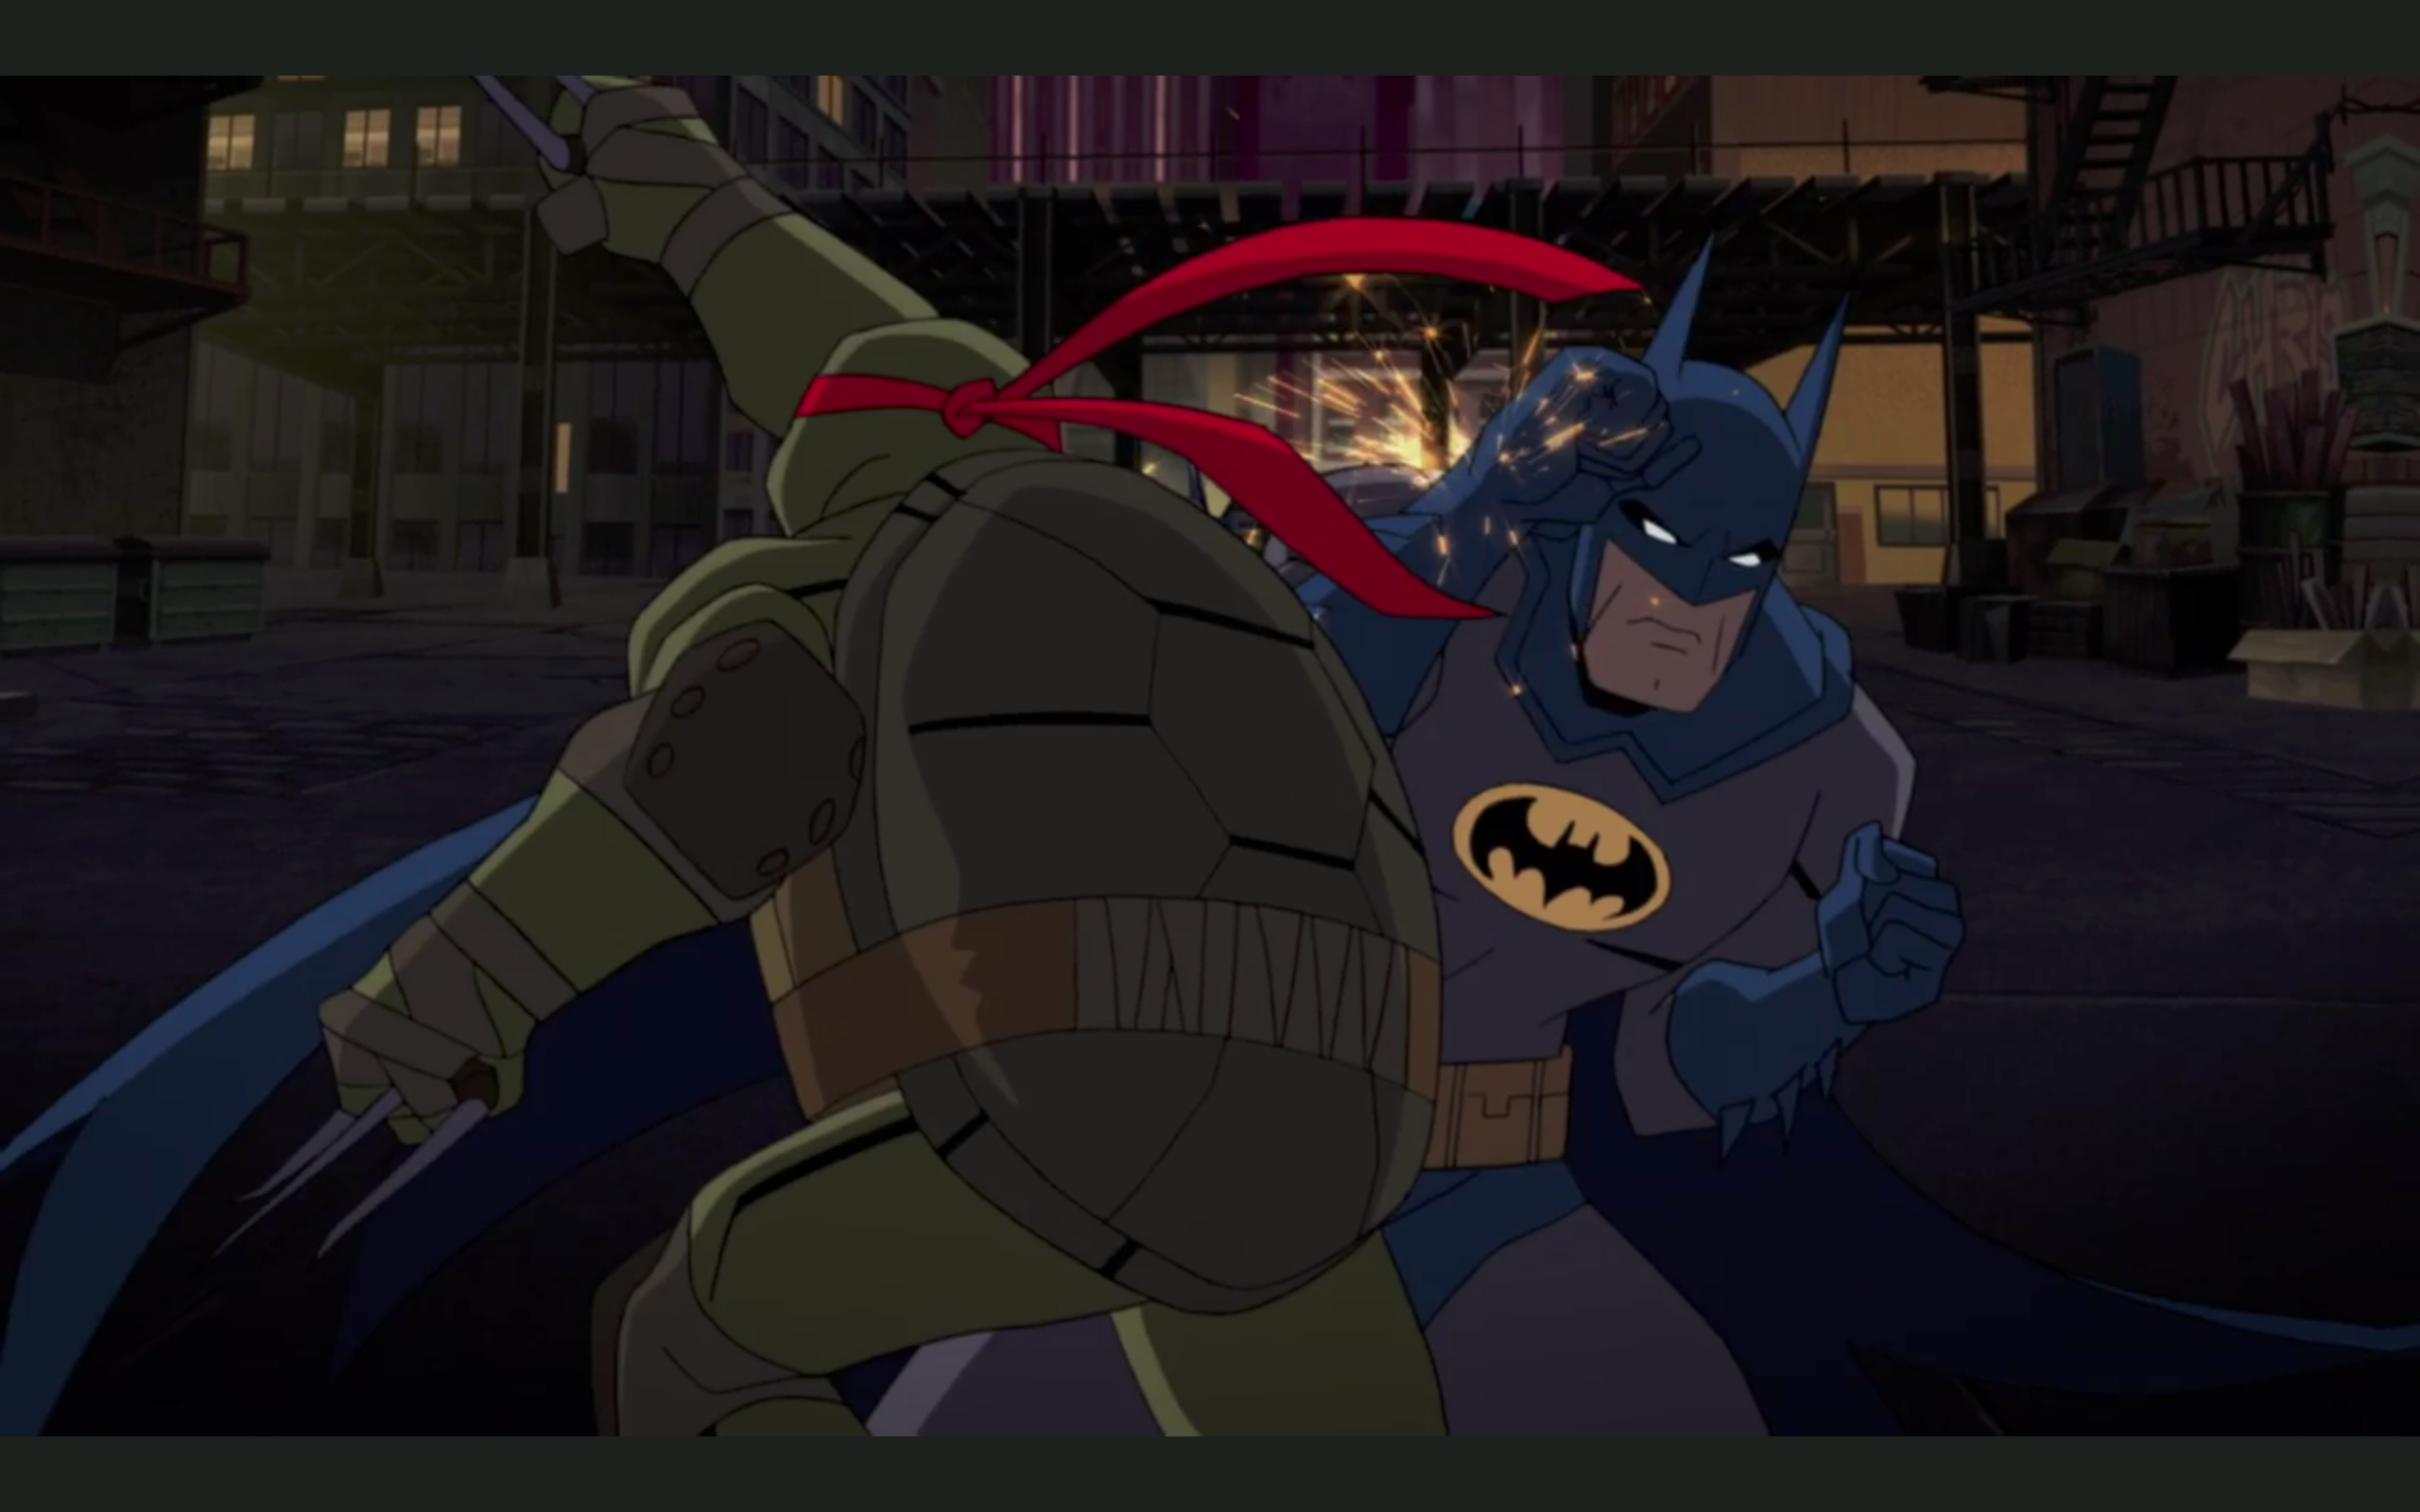 Batman vs the Teenage Mutant Ninja Turtles